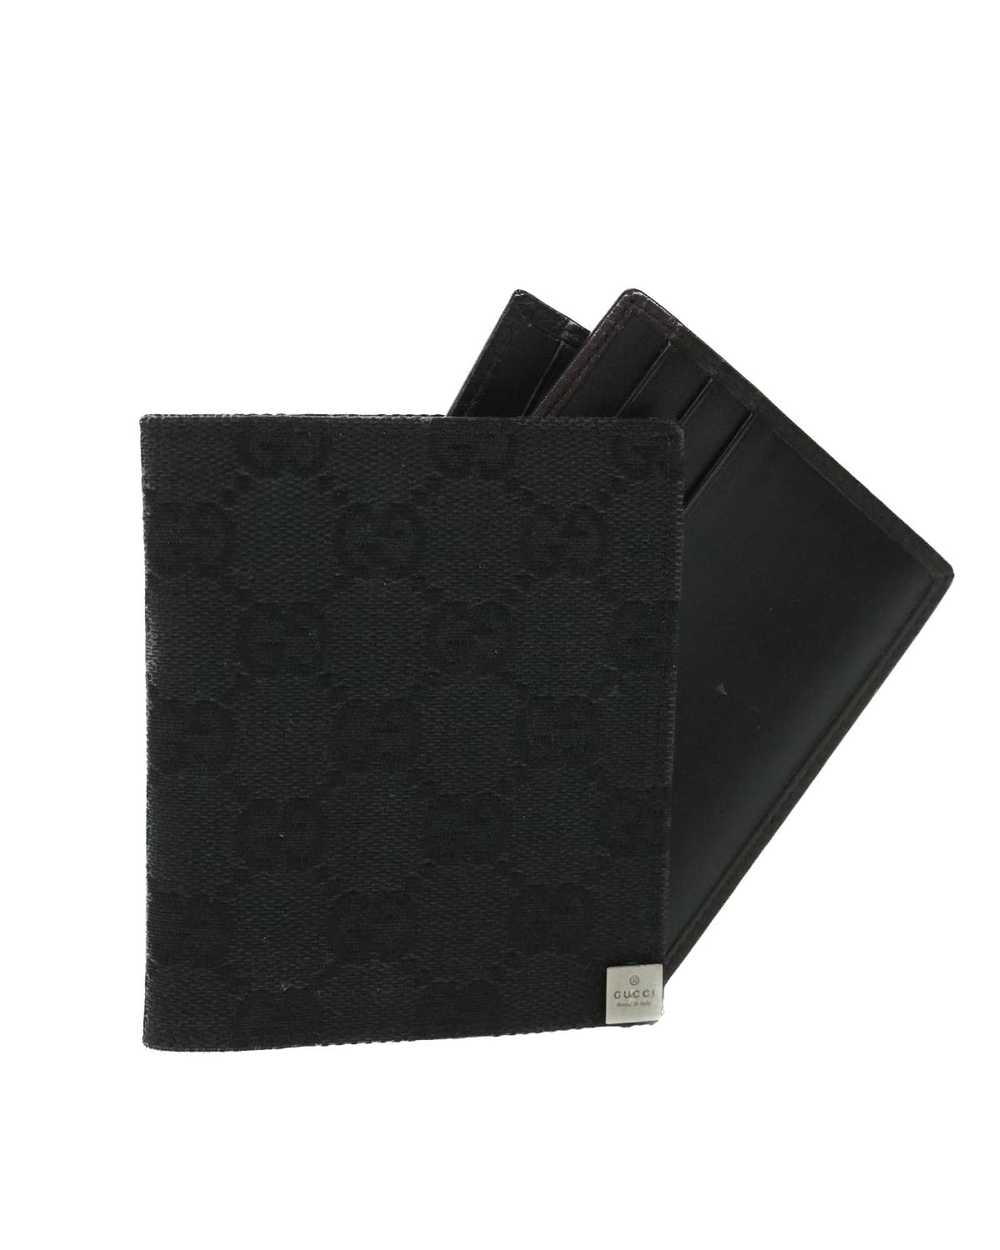 Gucci GG Canvas Card Case Black - image 1